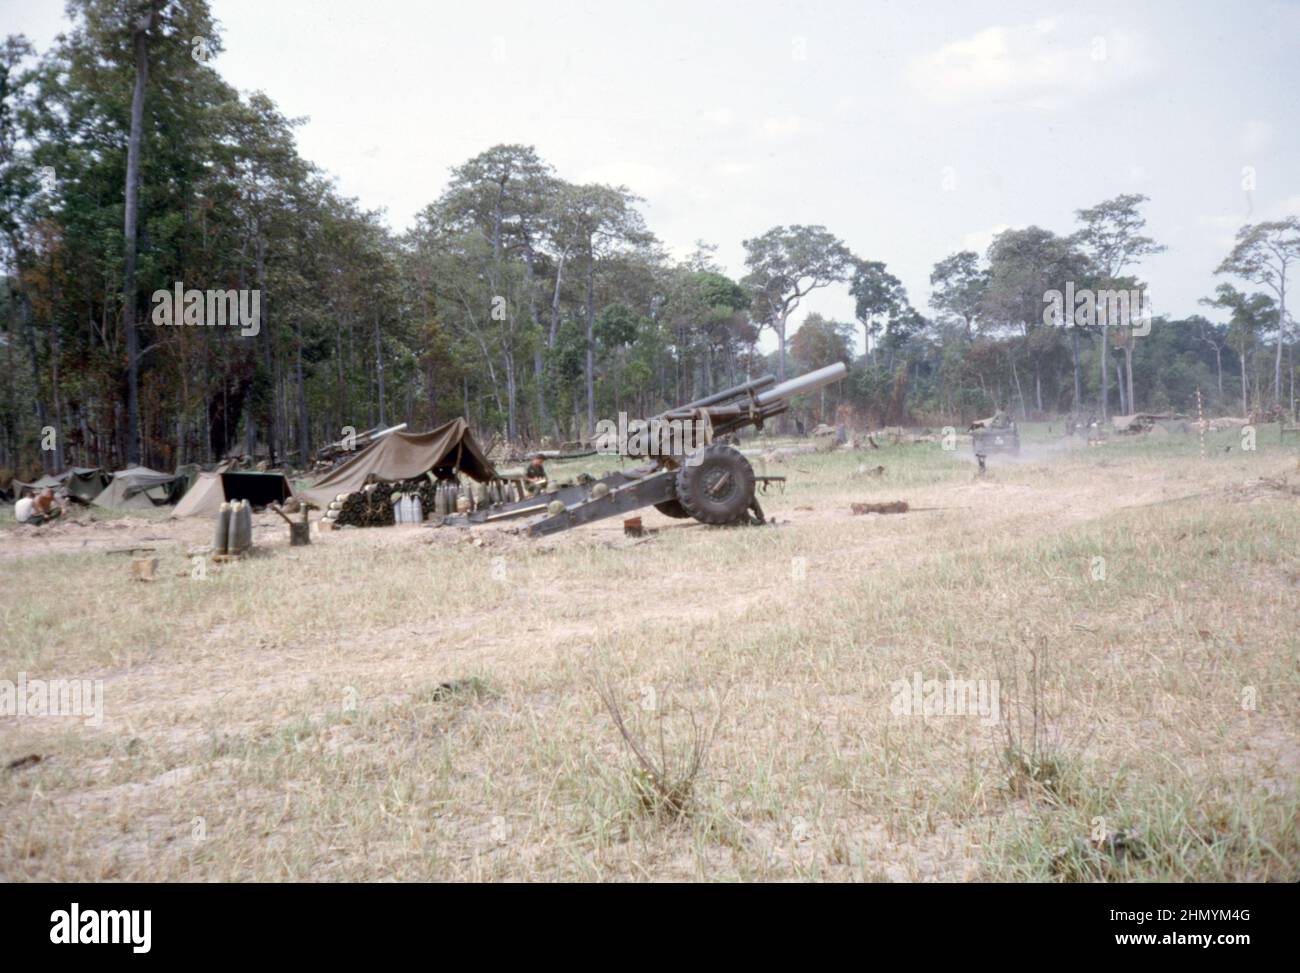 US ARMY / United States Army Schwere Feldhaubitze M114 - M1 155 mm / Heavy Howitzer M114 - Vietnam Krieg / Korean War Stock Photo